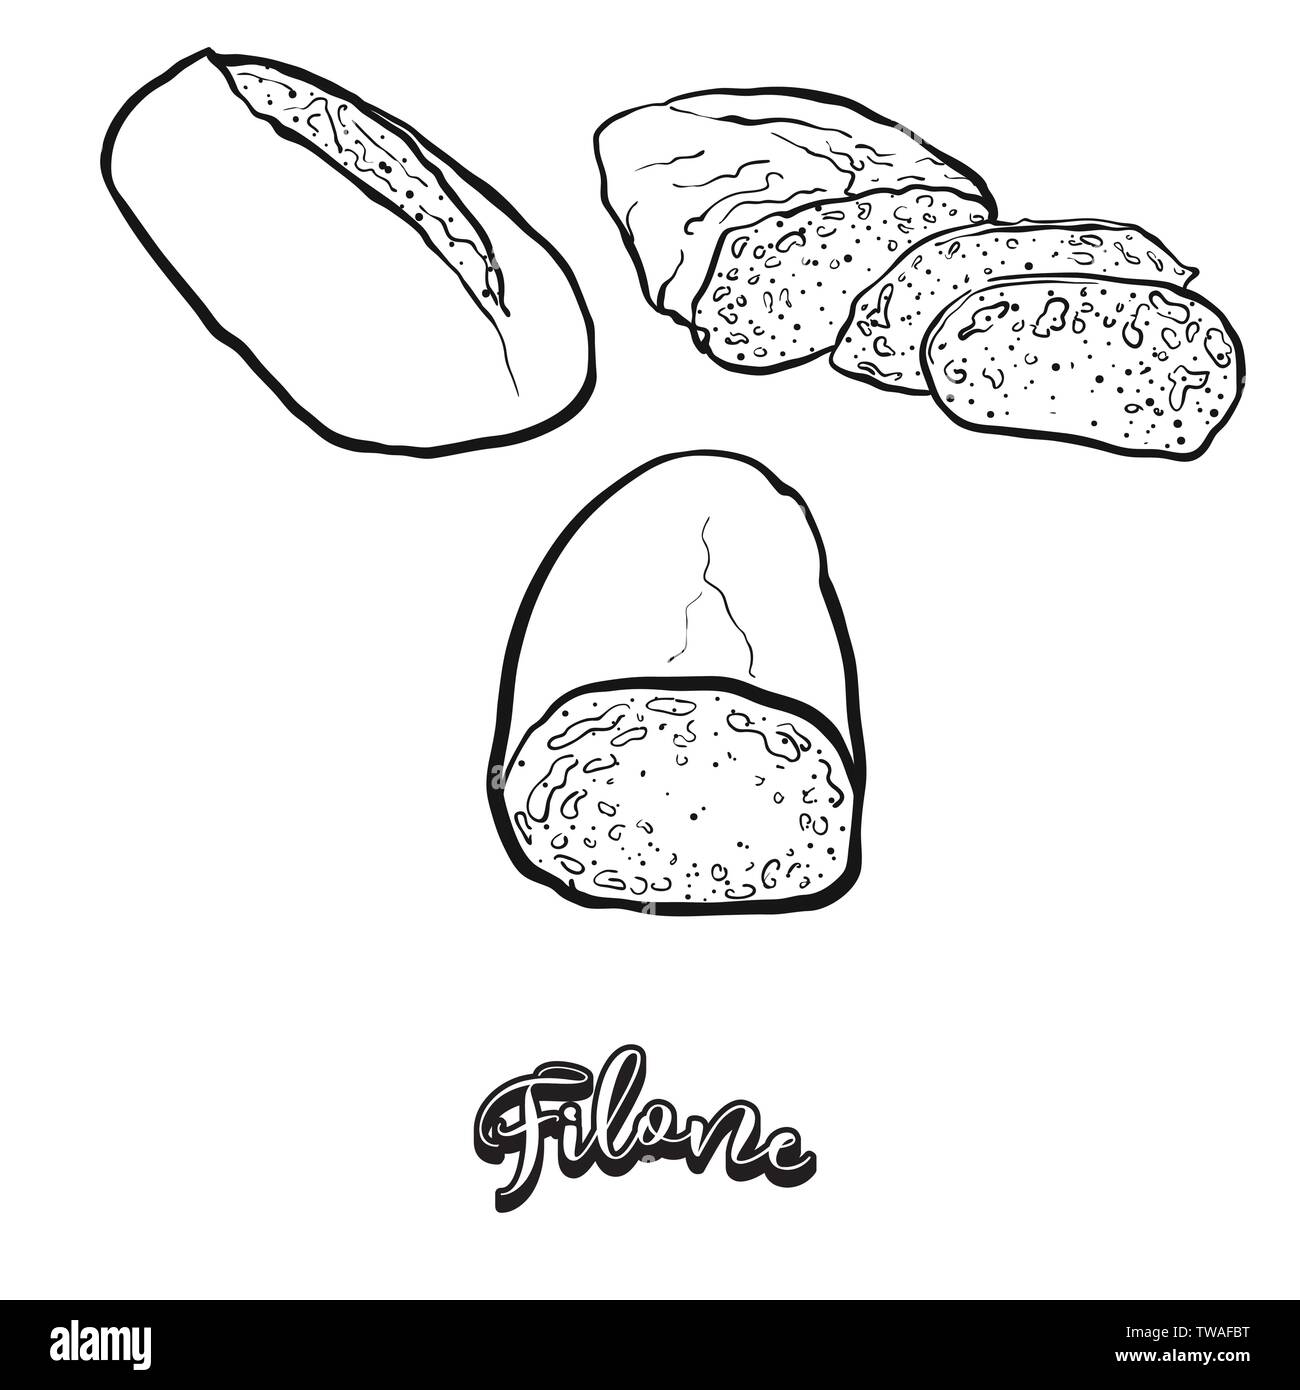 Filone croquis alimentaire sur tableau. De dessin vectoriel du levain, généralement connu en Italie. Illustration alimentaire série. Illustration de Vecteur